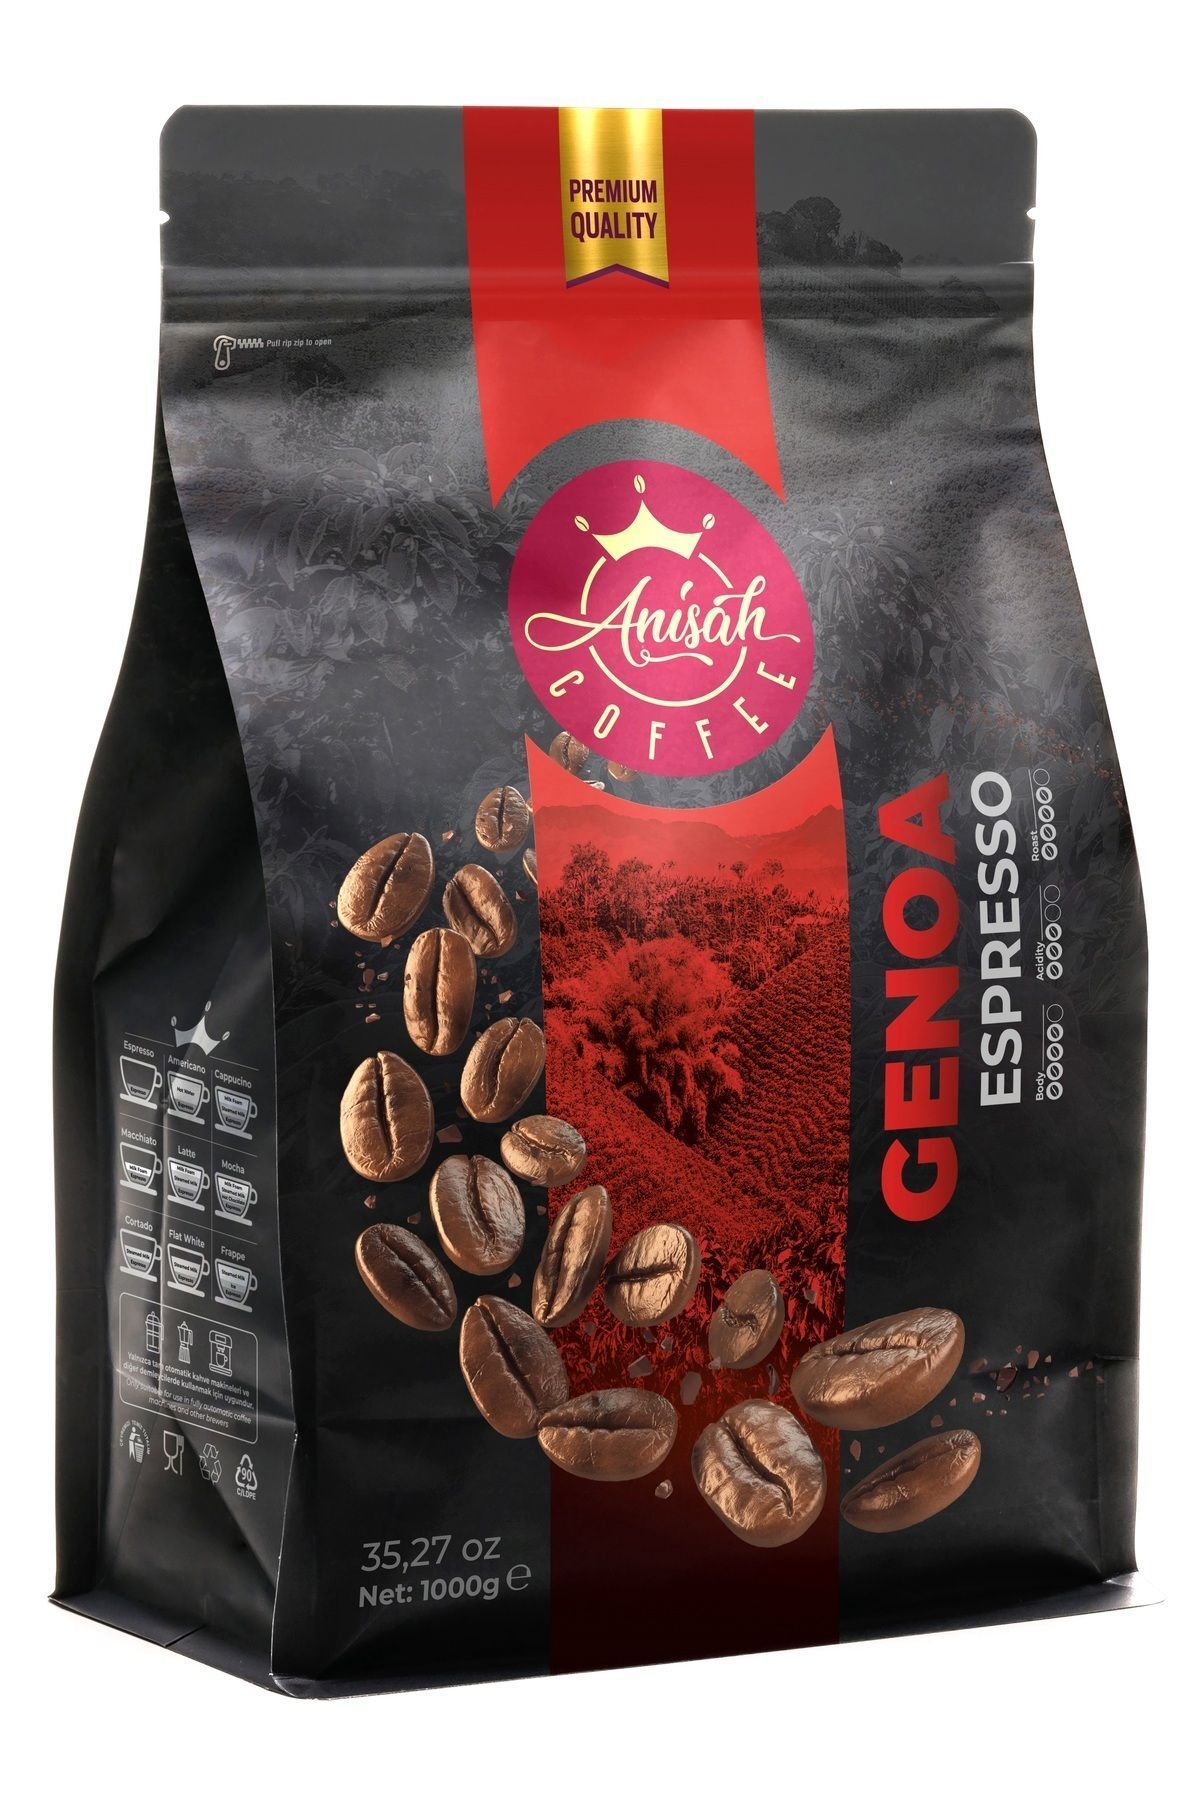 Anisah Coffee Genoa Espresso Çekirdek Kahve | 1000g | Aromatik Tat Ve Zengin Krema